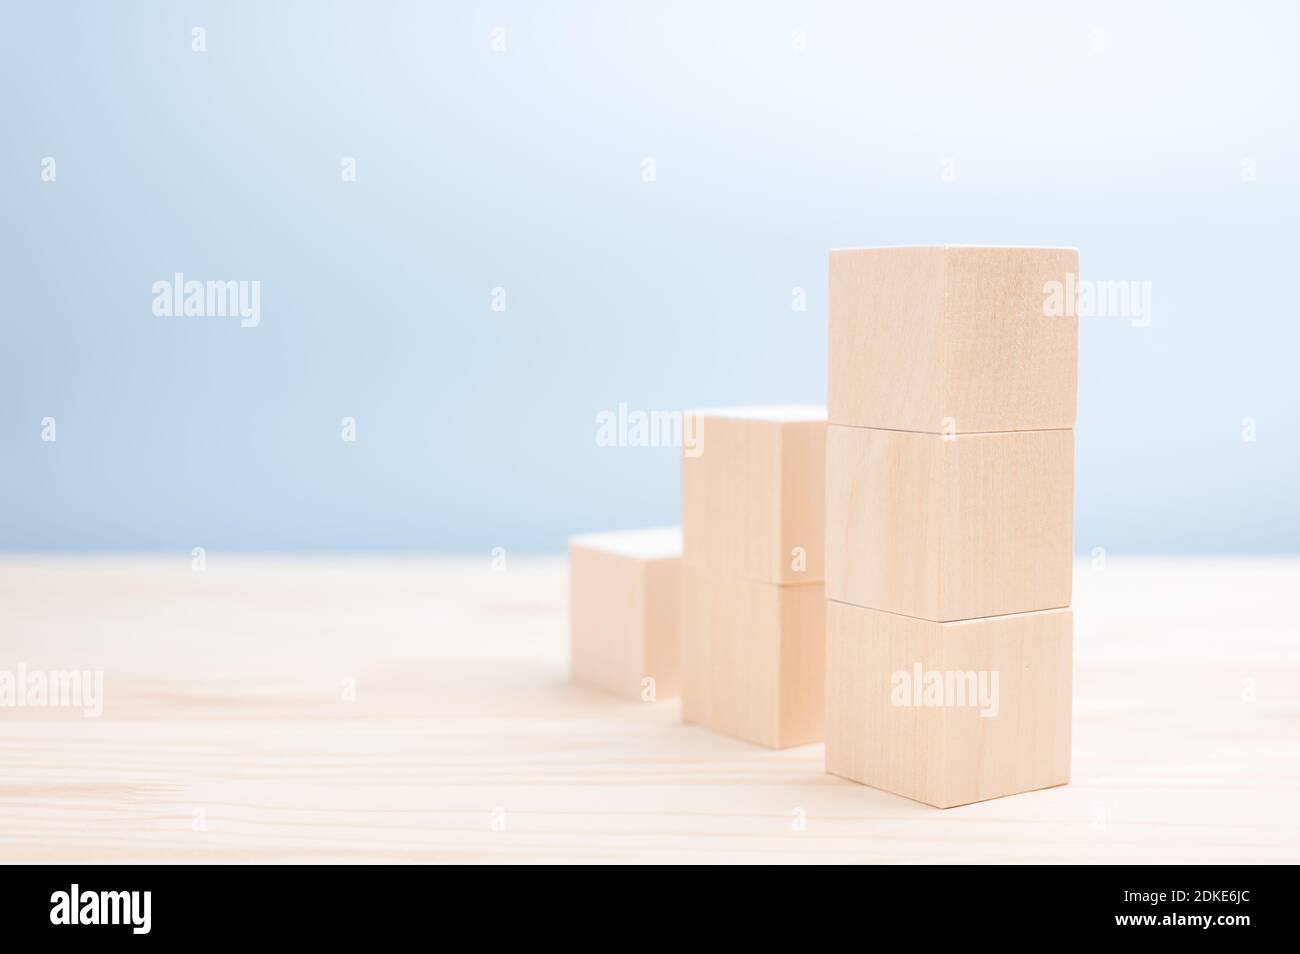 immagine mockup. Scala di cubi di legno per icone, simboli o testo. Business e design. Modello per la creazione di un concetto di crescita aziendale Foto Stock